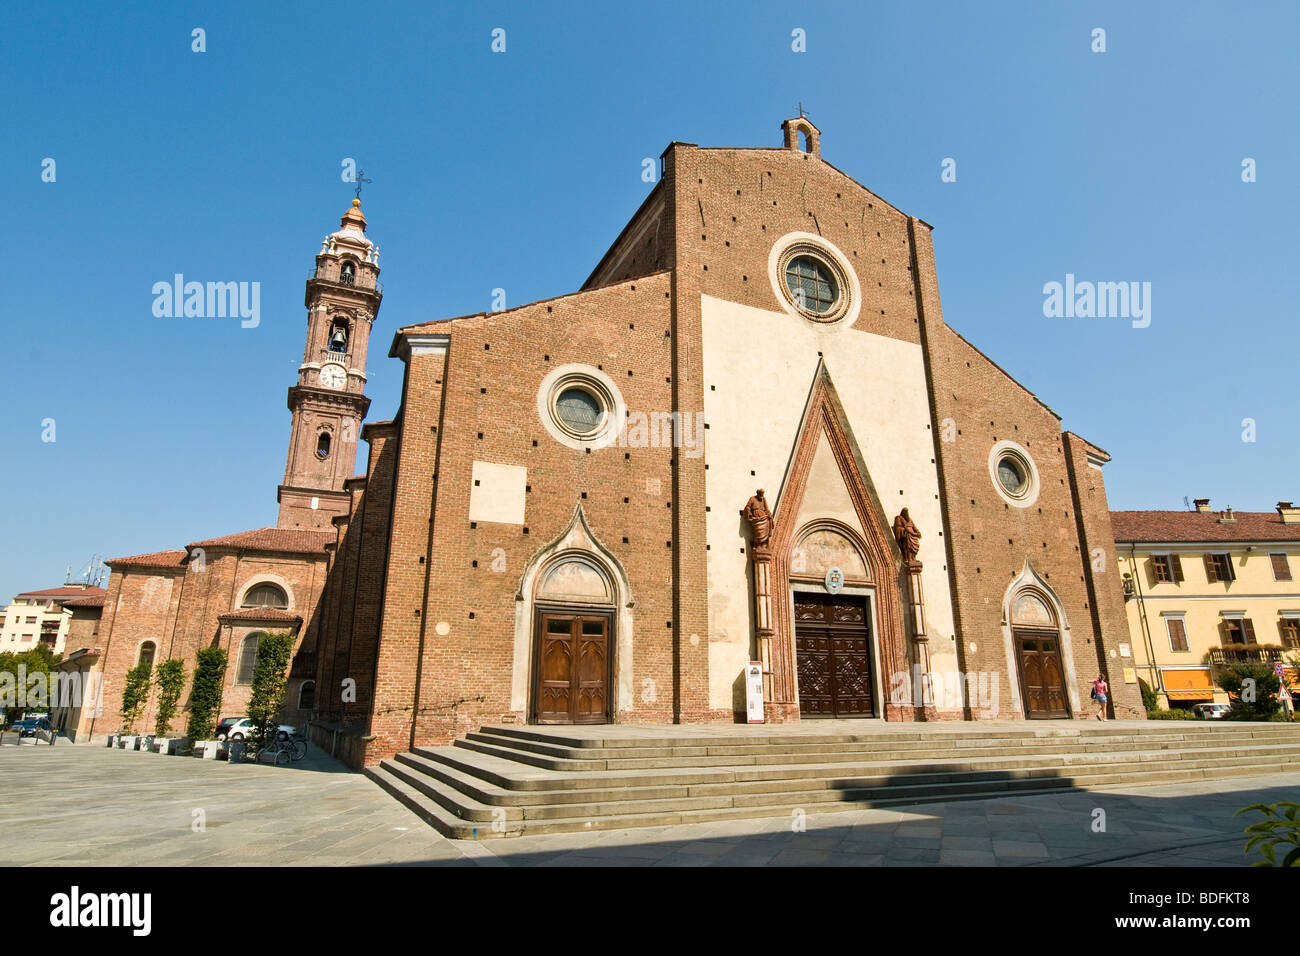 La cattedrale, Saluzzo, provincia di Cuneo, Italia Foto Stock